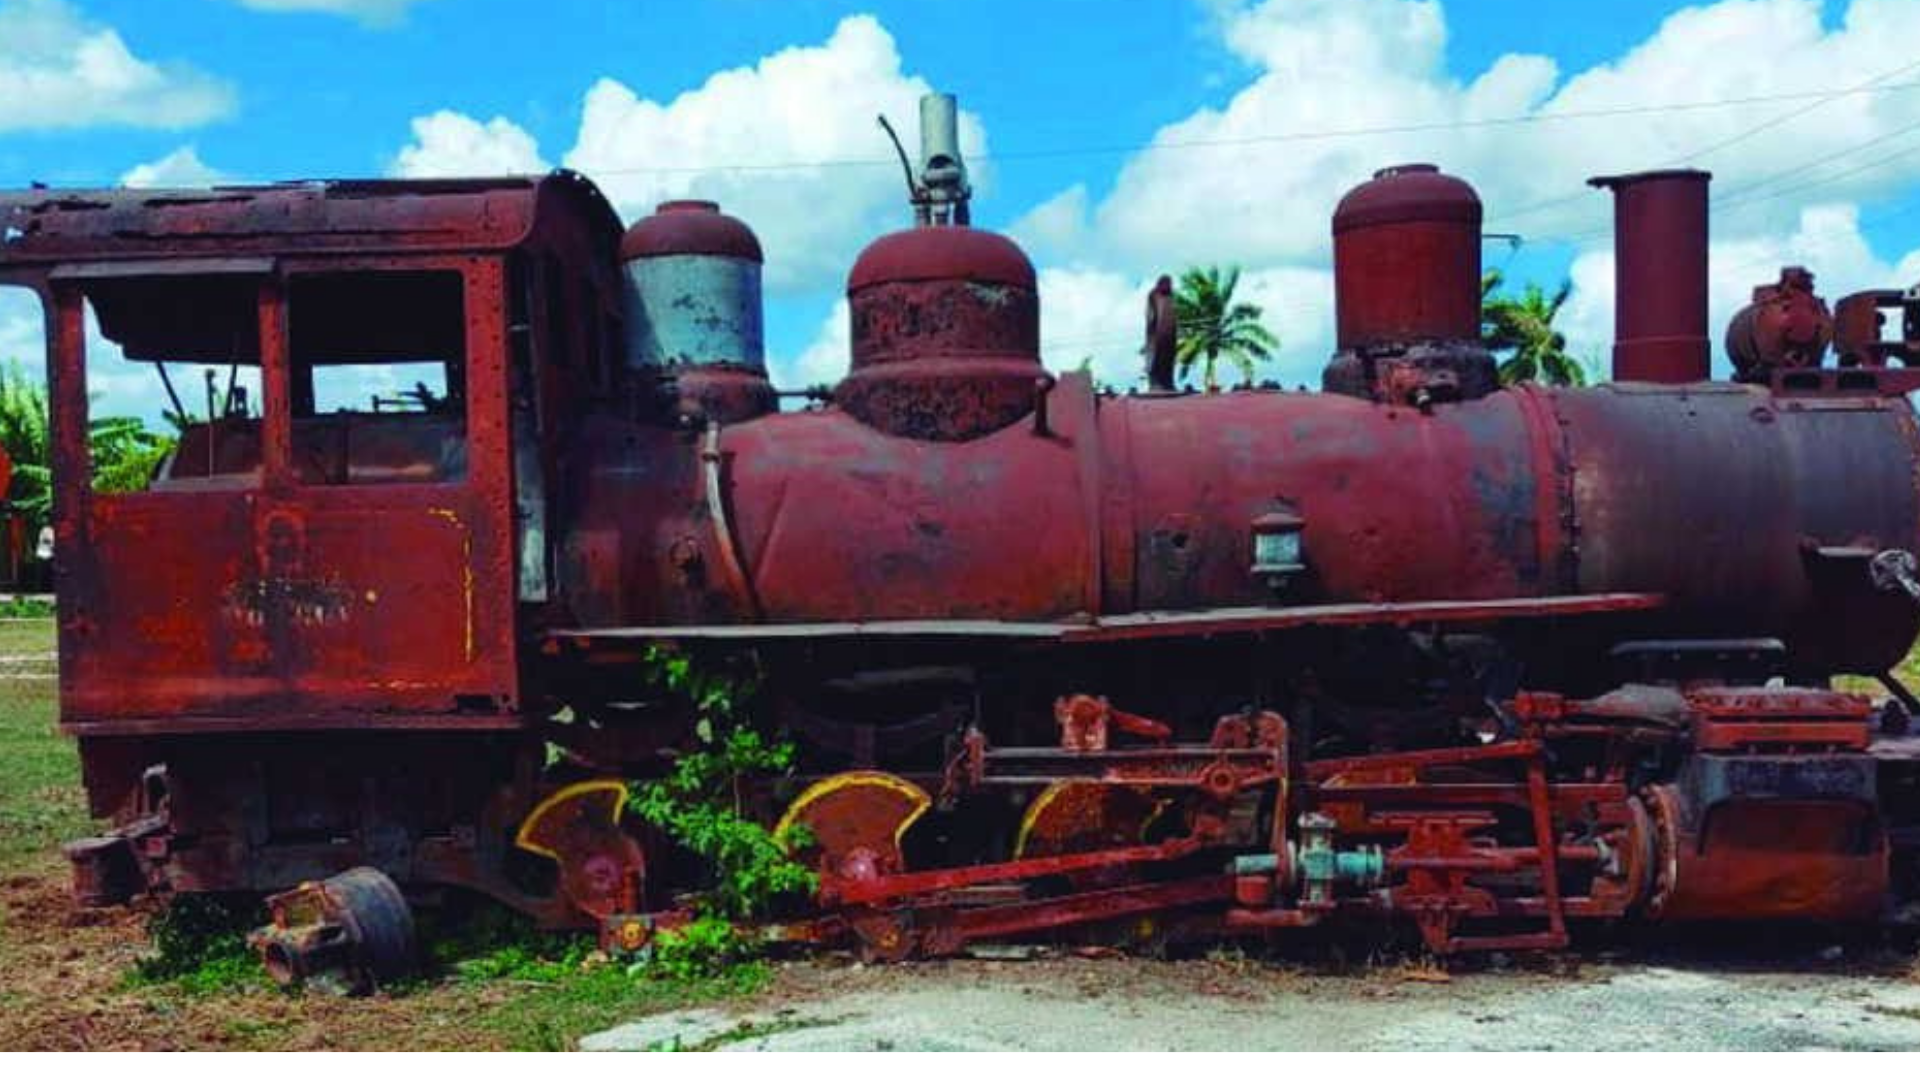 Locomotora Baldwin de línea estrecha, creada en 1917